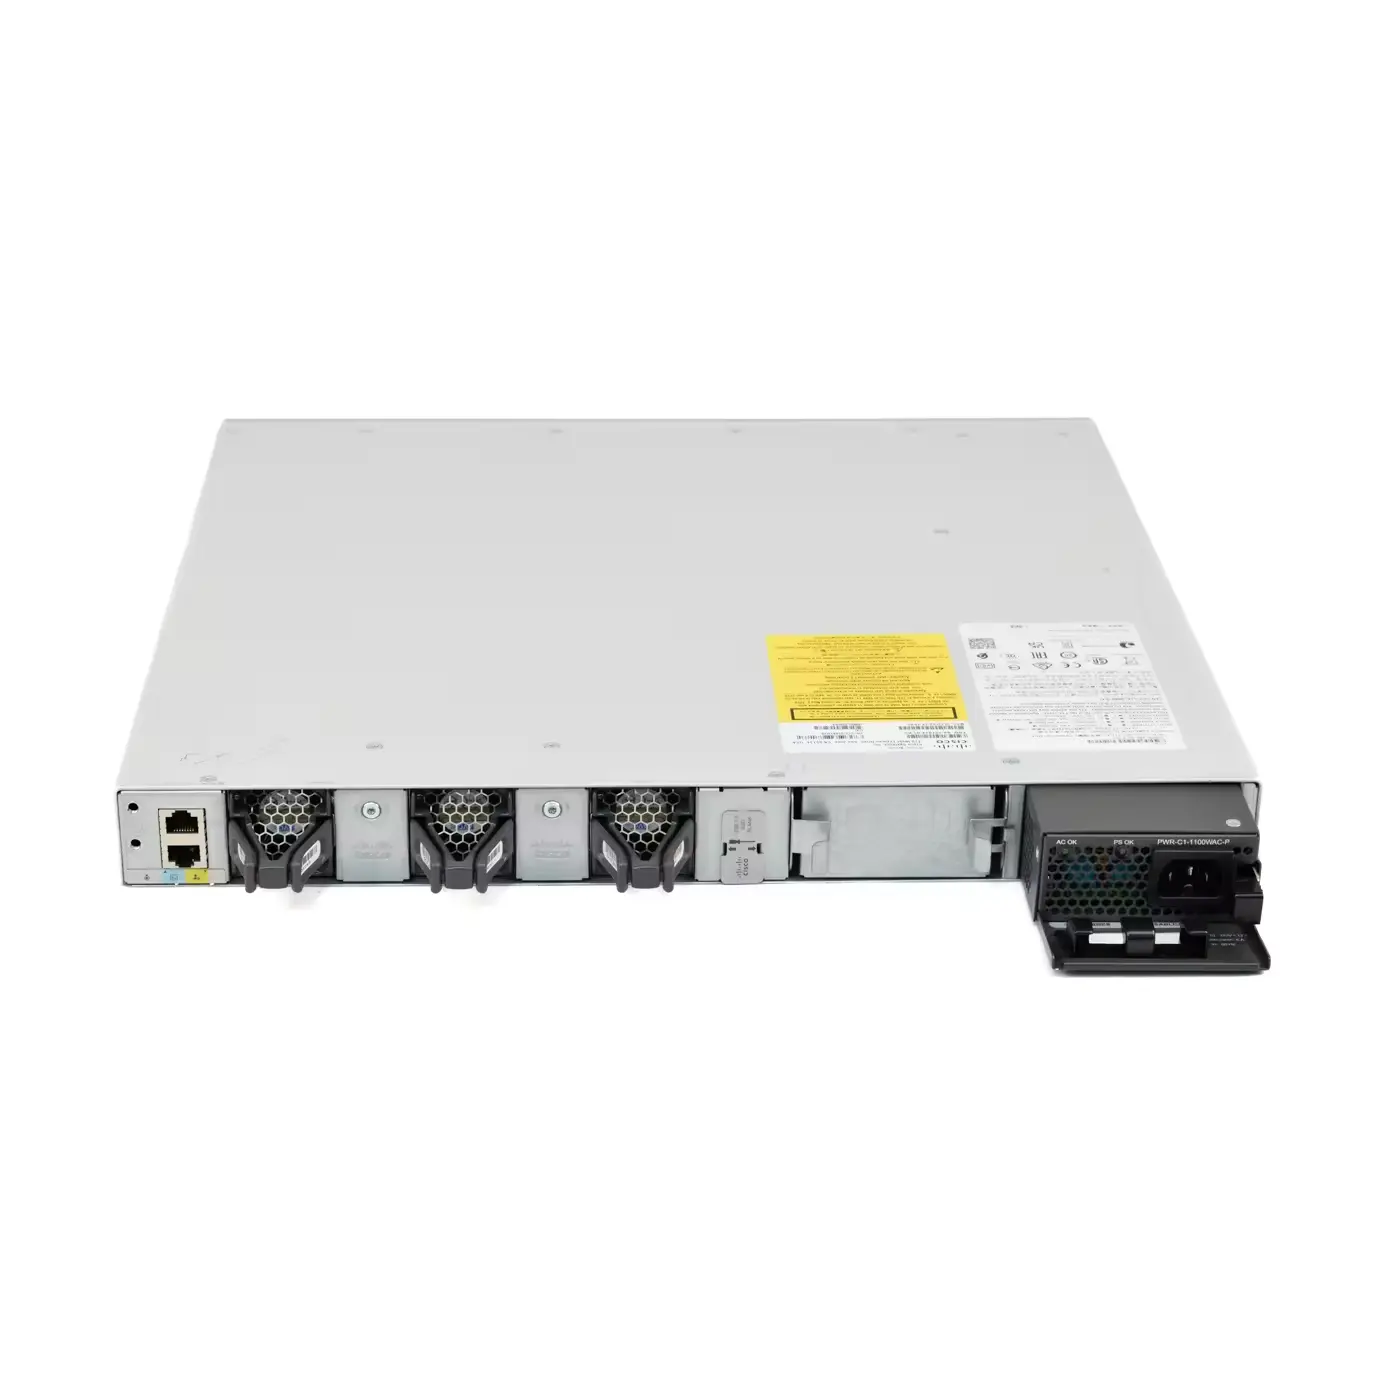 中古C9300-48UN-A Cata lyst 9300シリーズ48ポート10gUPOEネットワークスイッチ48ポートエンタープライズスイッチ